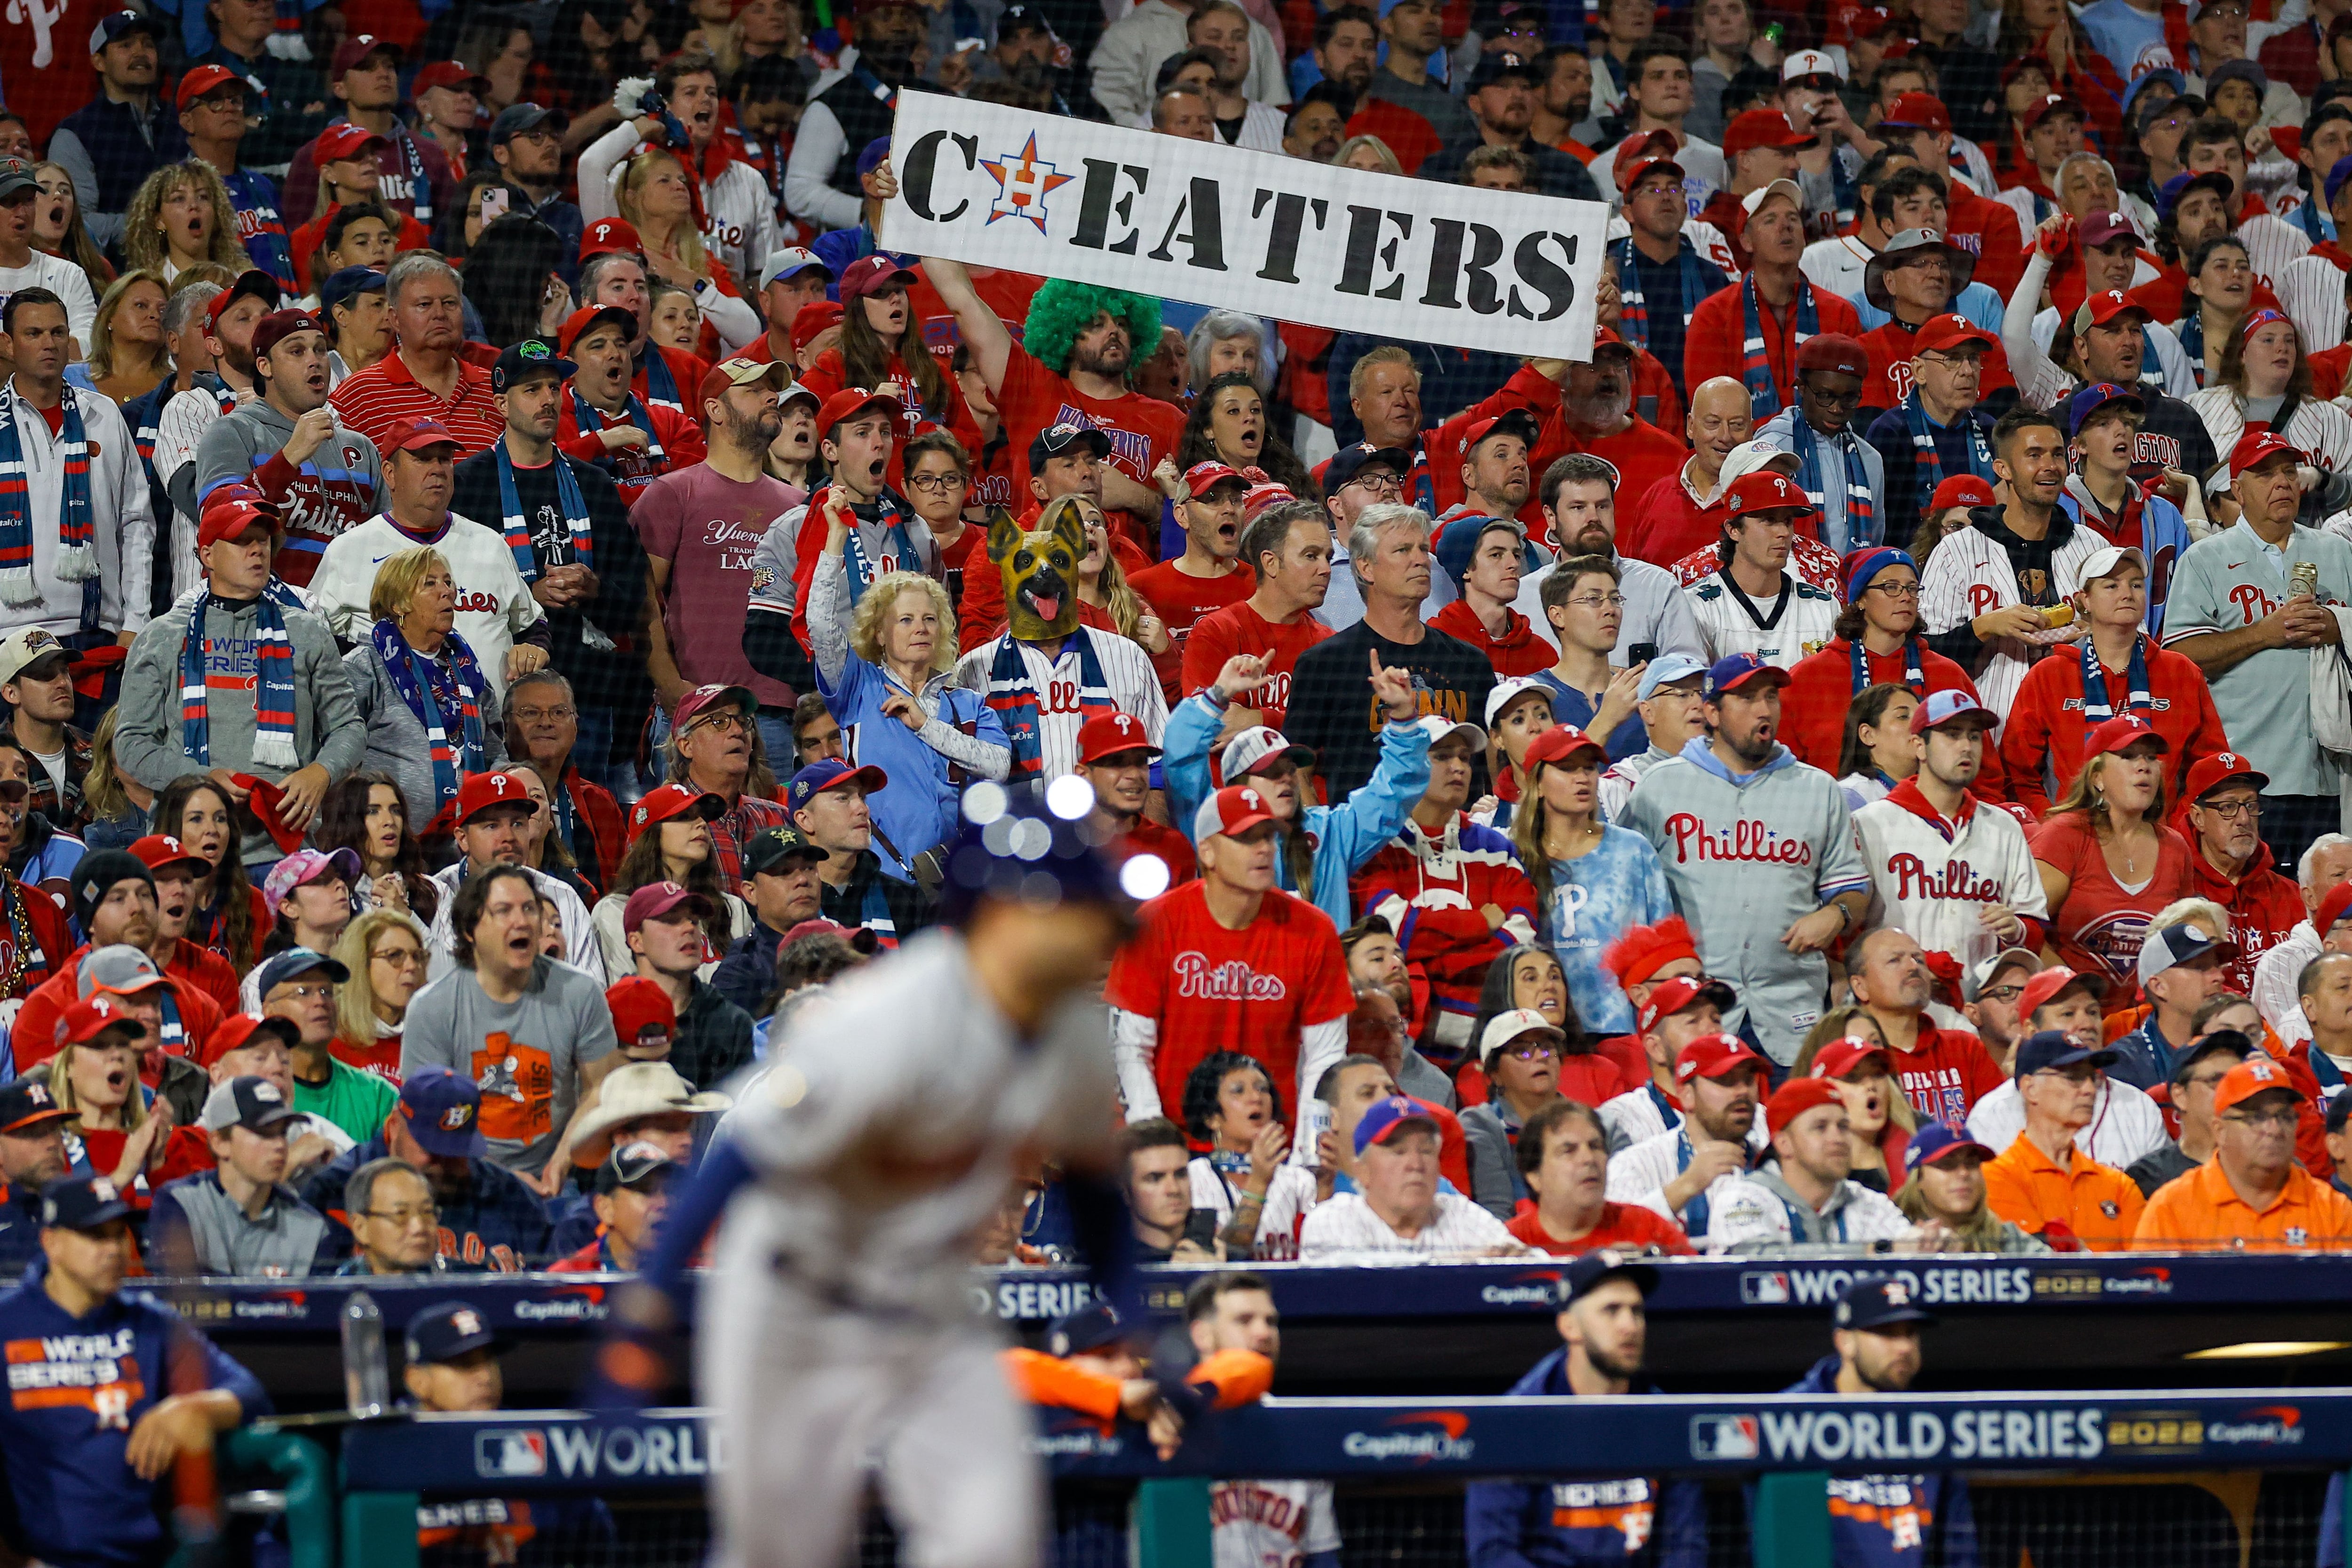 Phillies-Astros World Series: Jesus-like Bryce Harper mural, fan's